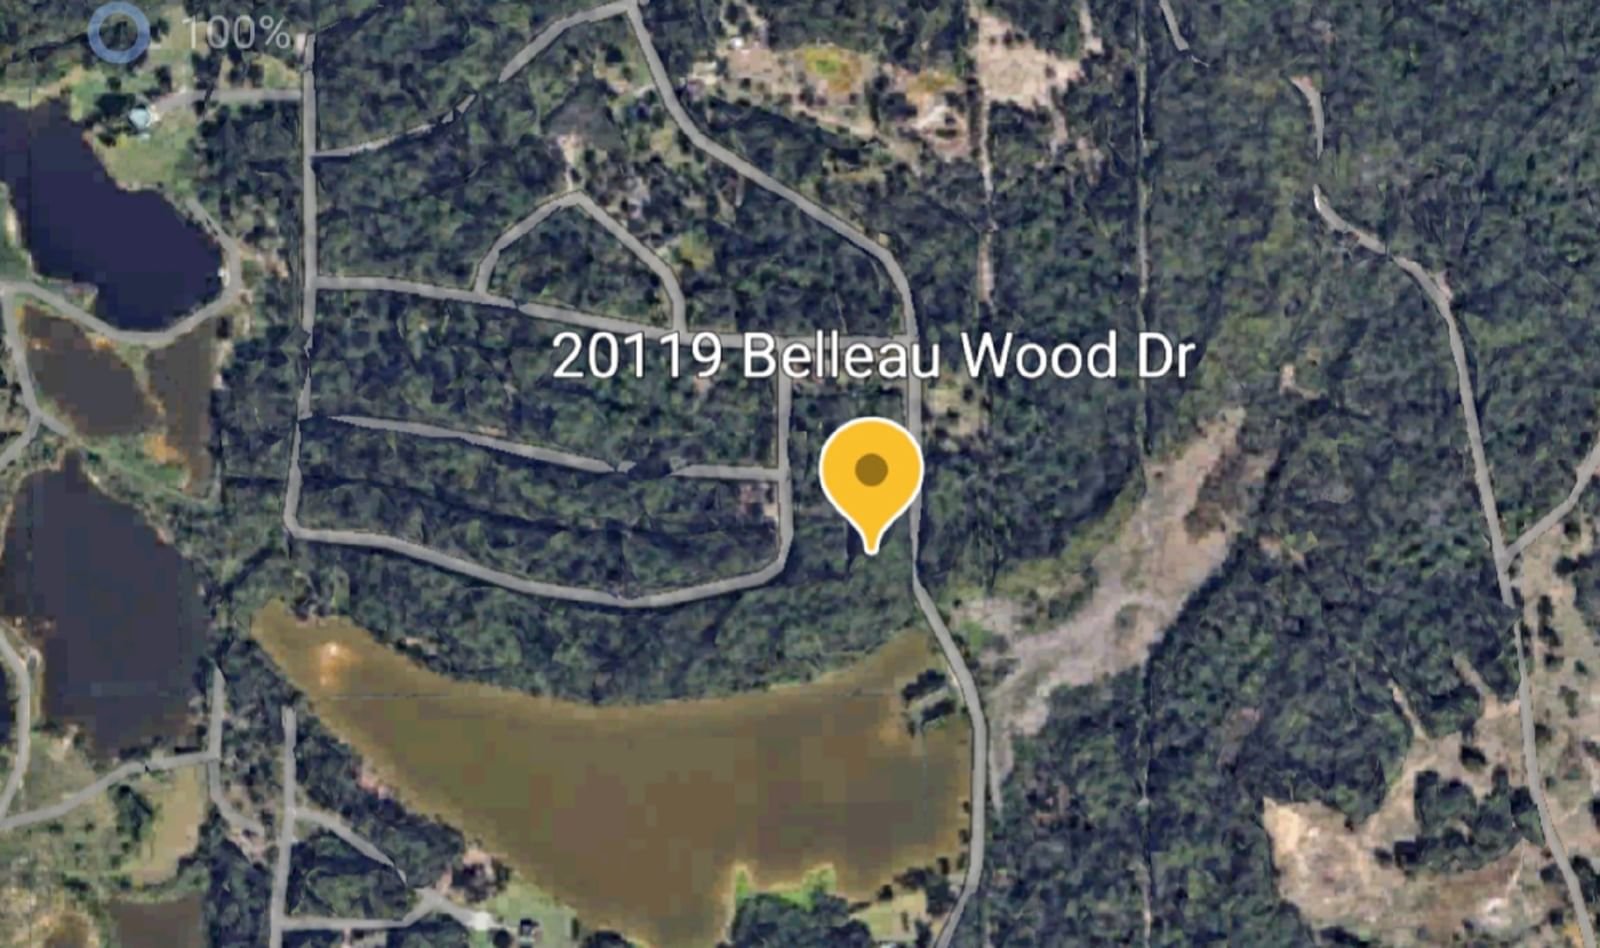 Real estate property located at 20119 Belleau Wood, Harris, Belleau Woods Sec 01 R/P, Houston, TX, US